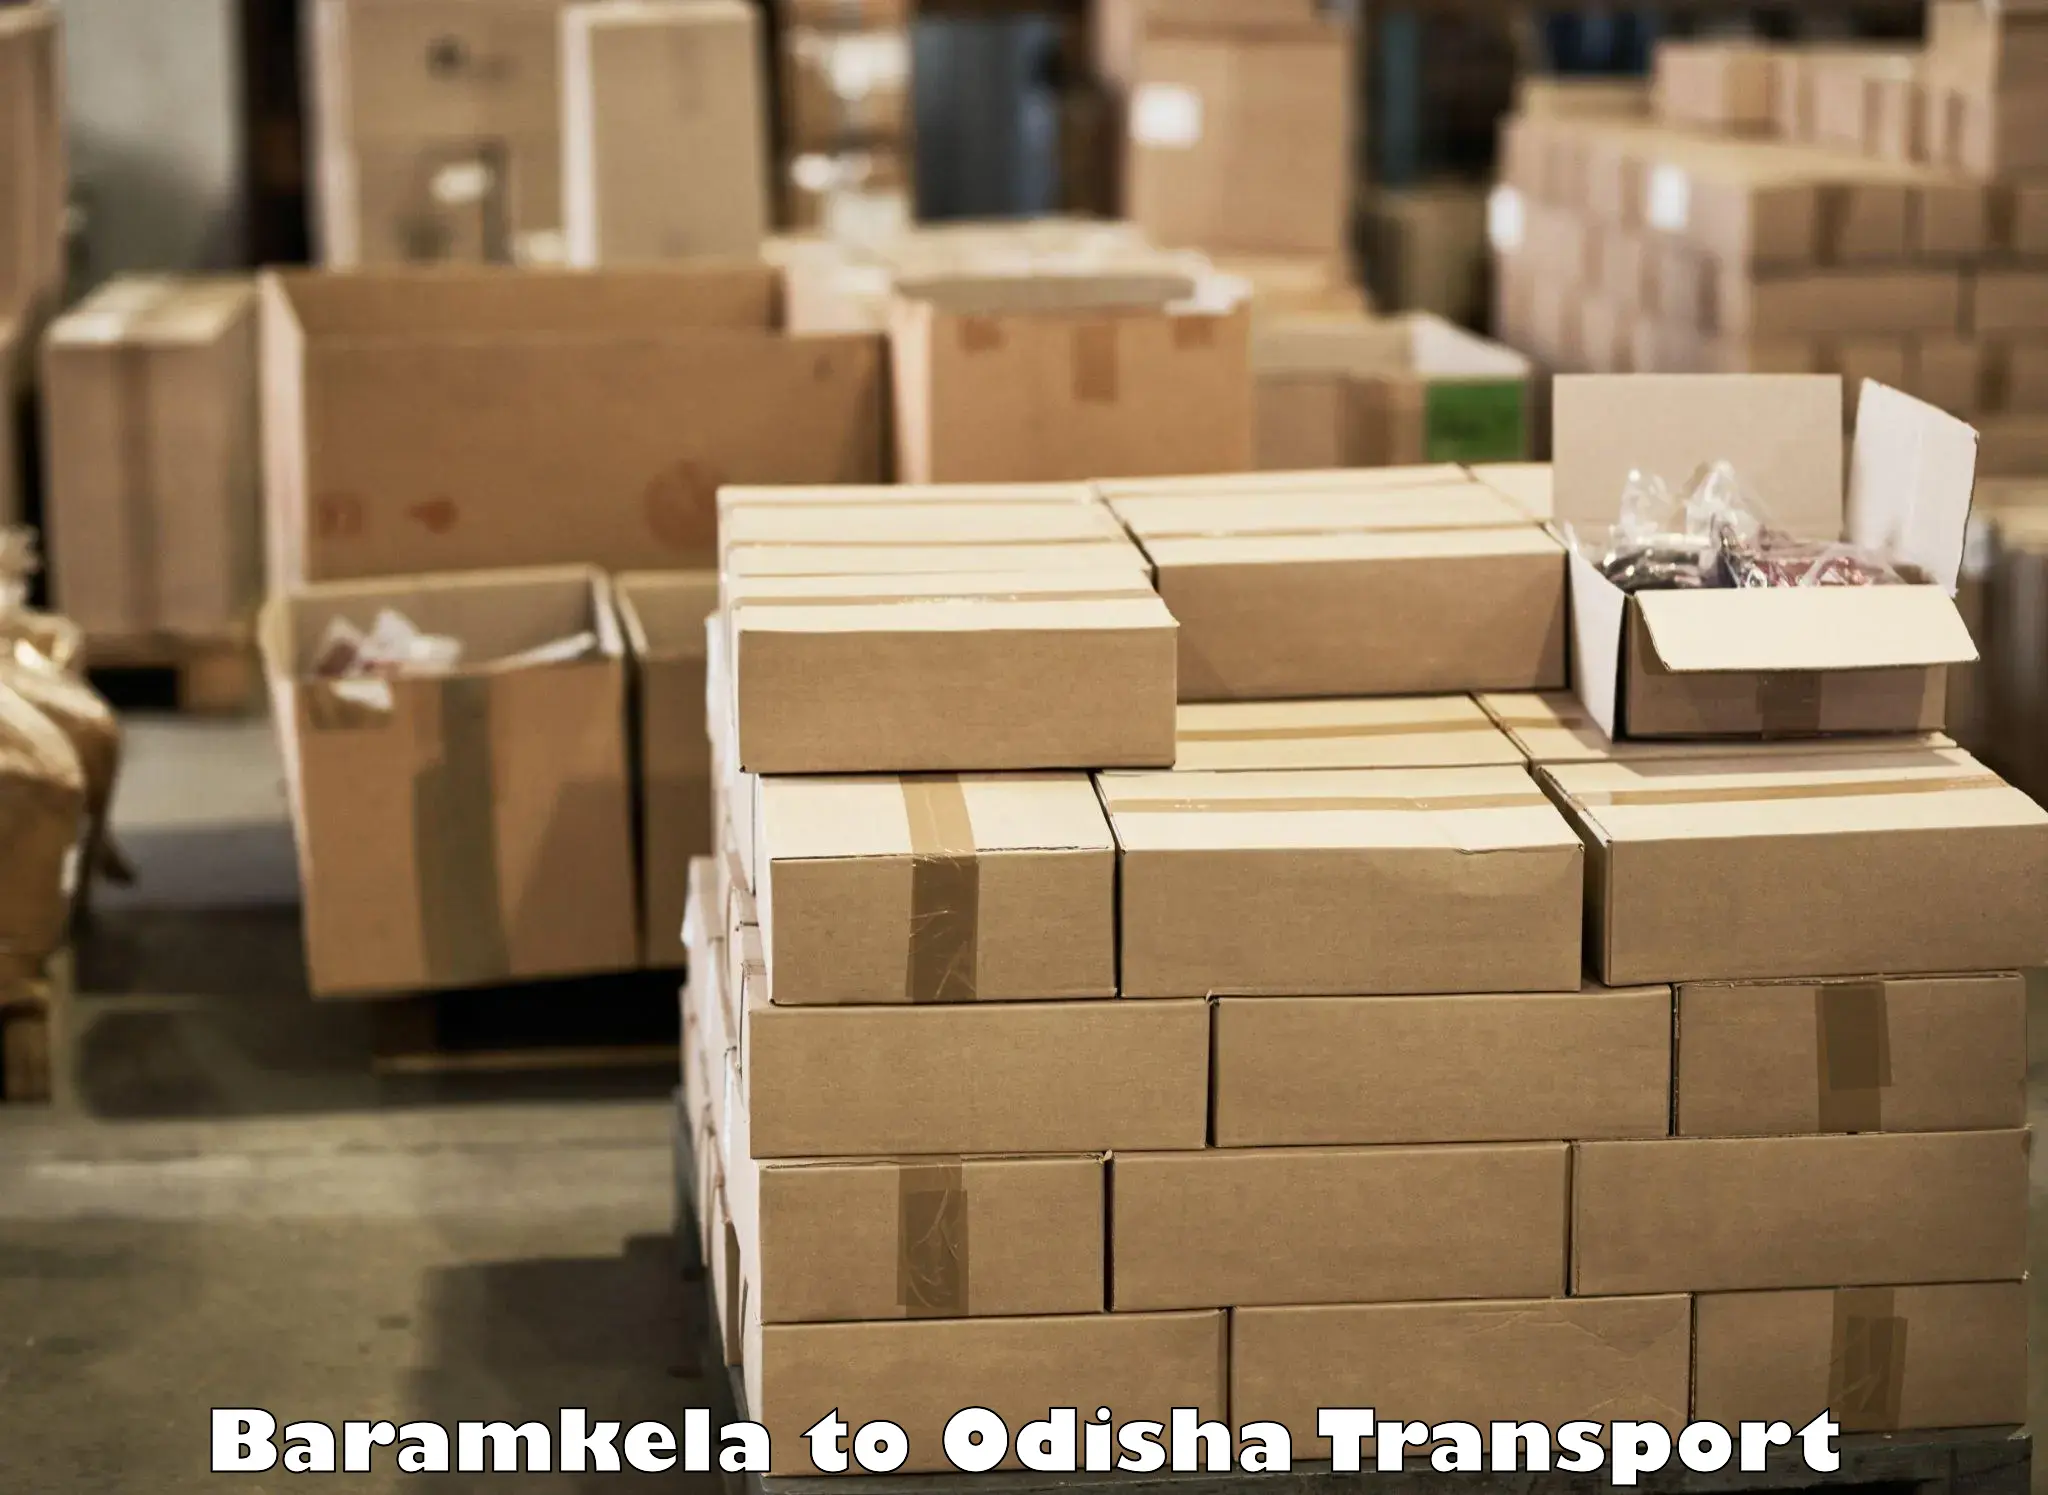 Transportation services Baramkela to Mahakalapada